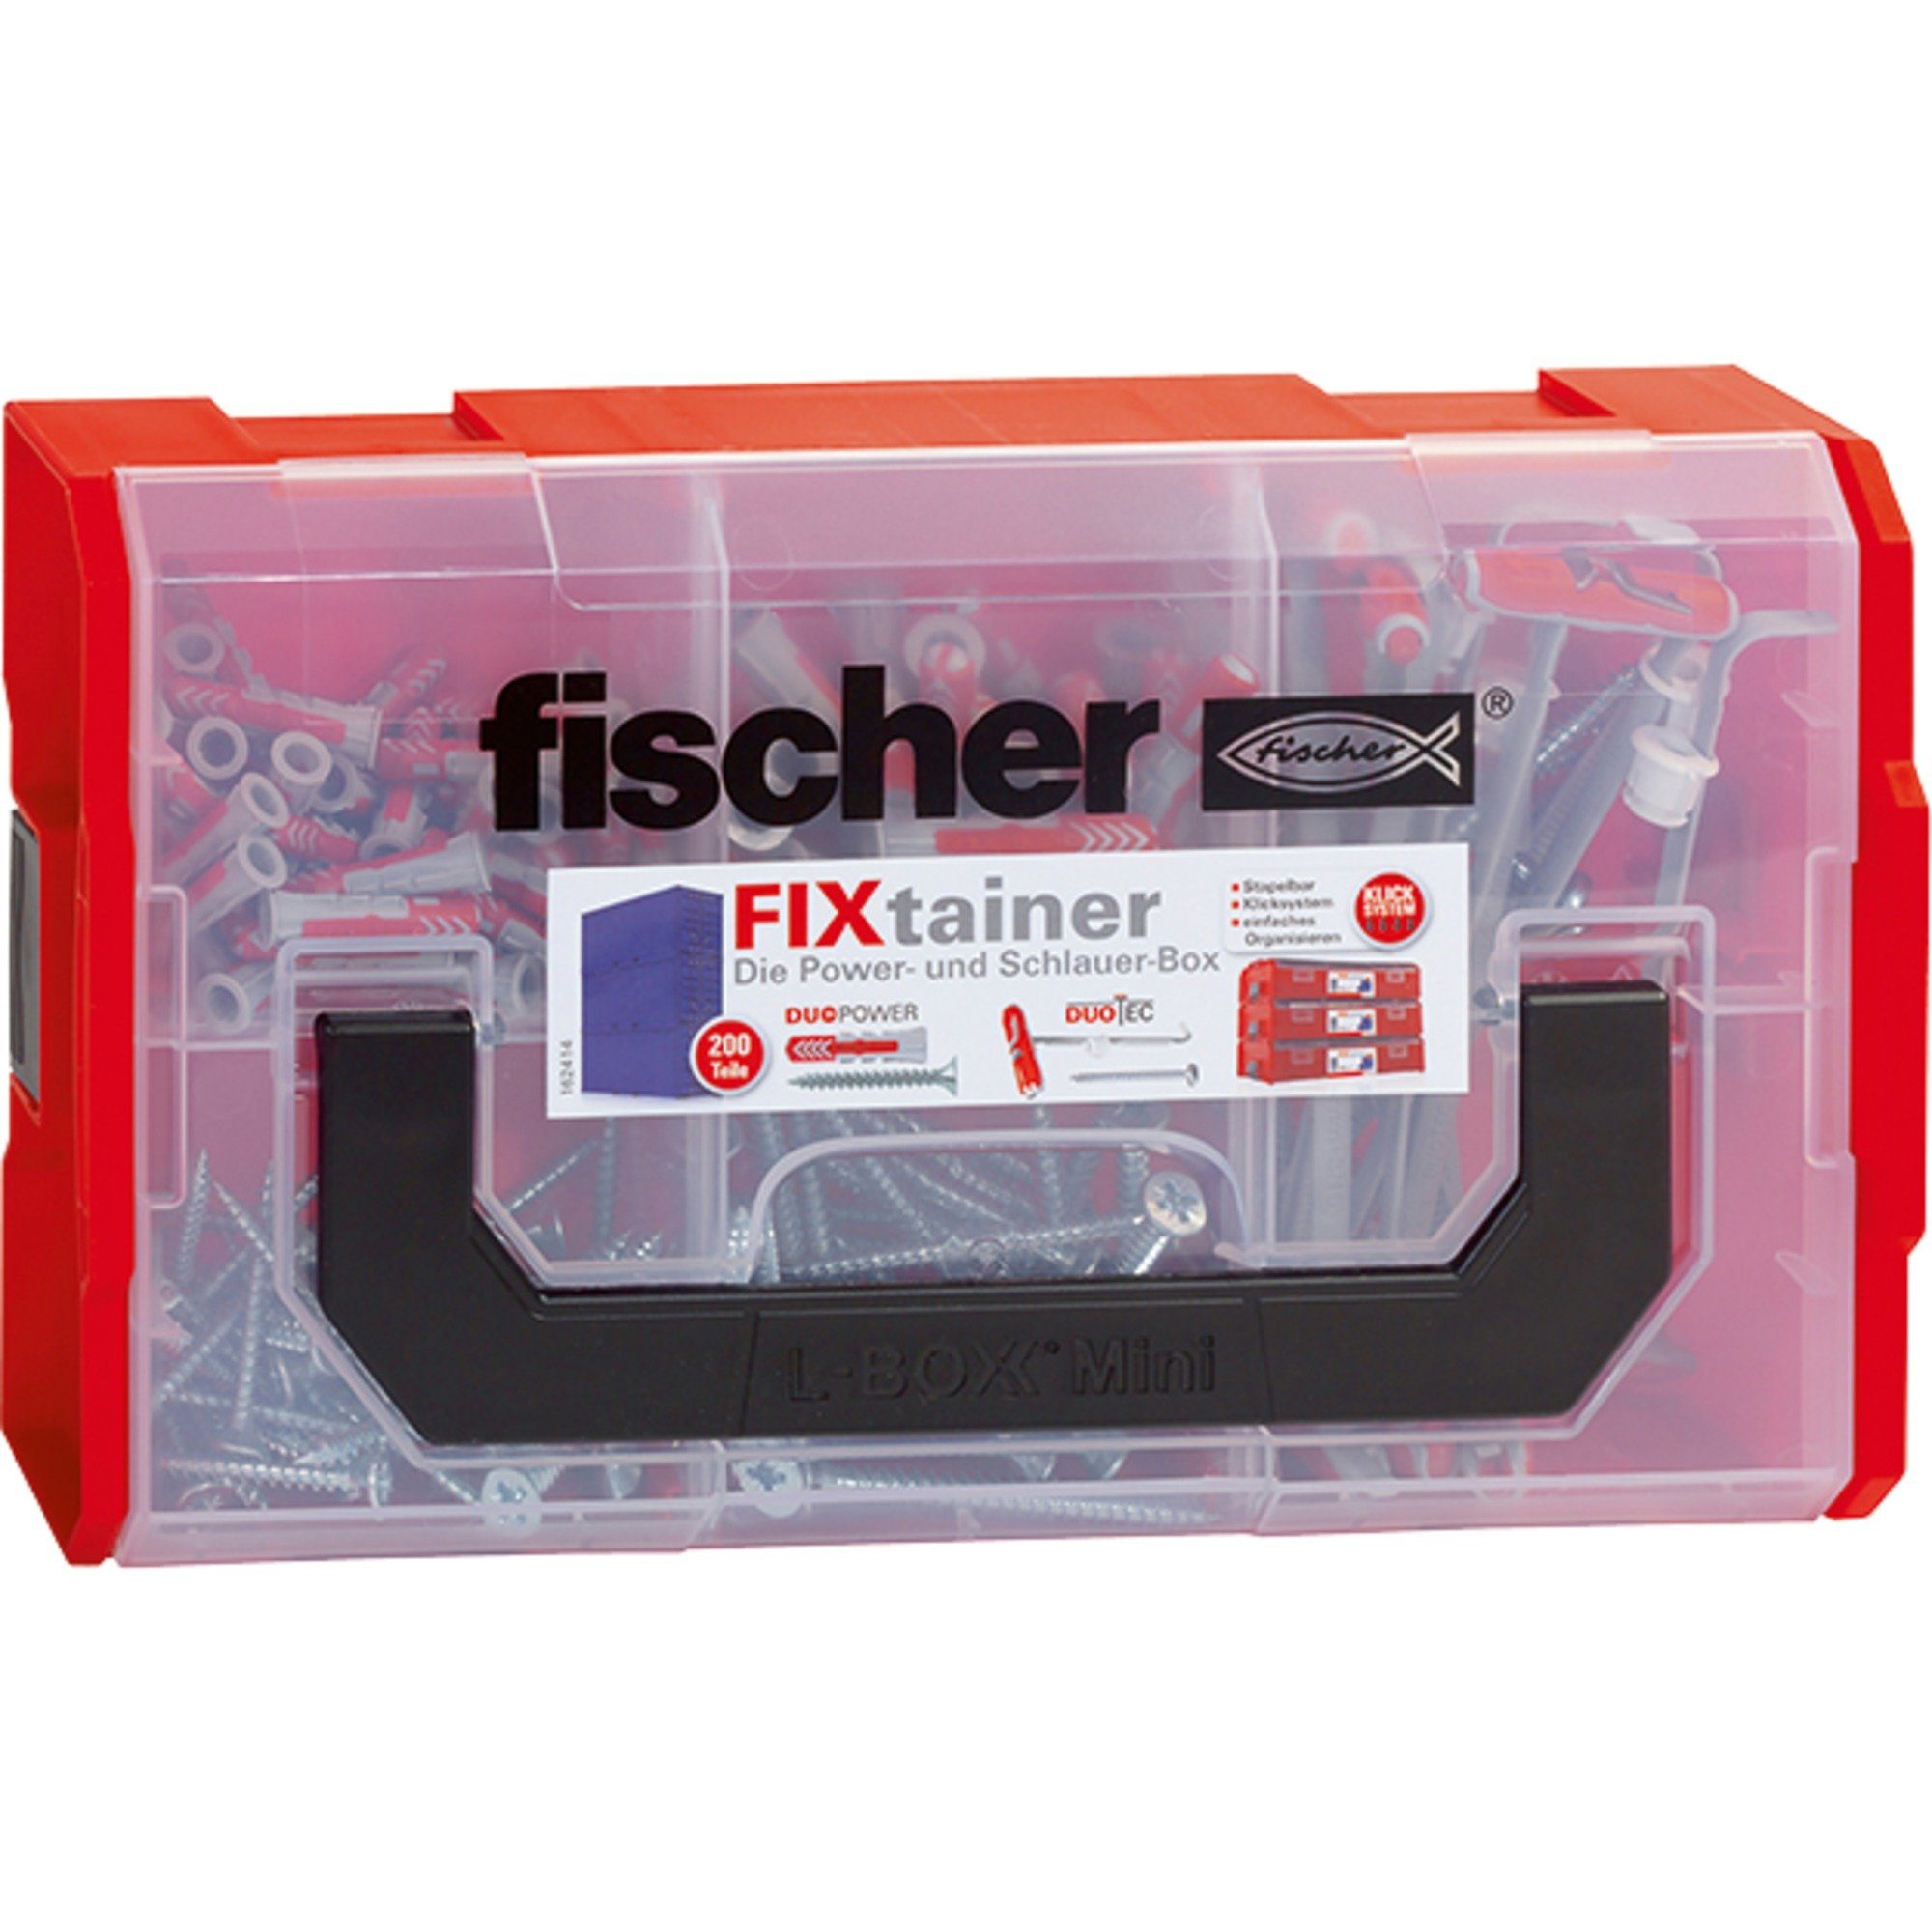 Fischer Universaldübel FixTainer-DUOPOWER/DUOTEC